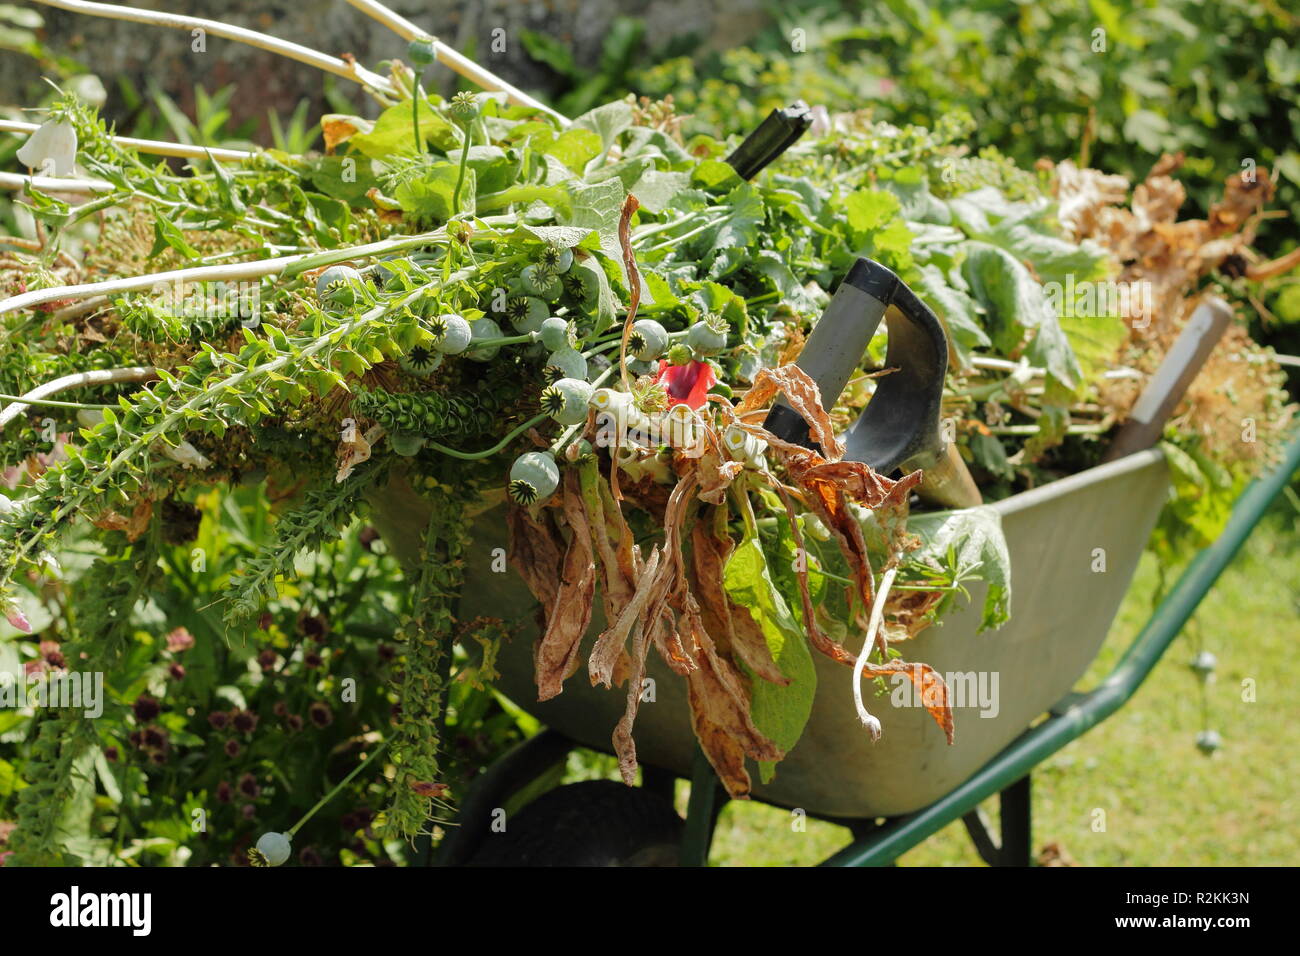 Una carretilla llena de plantas y flores y gastado en un jardín inglés en simmer,UK Foto de stock